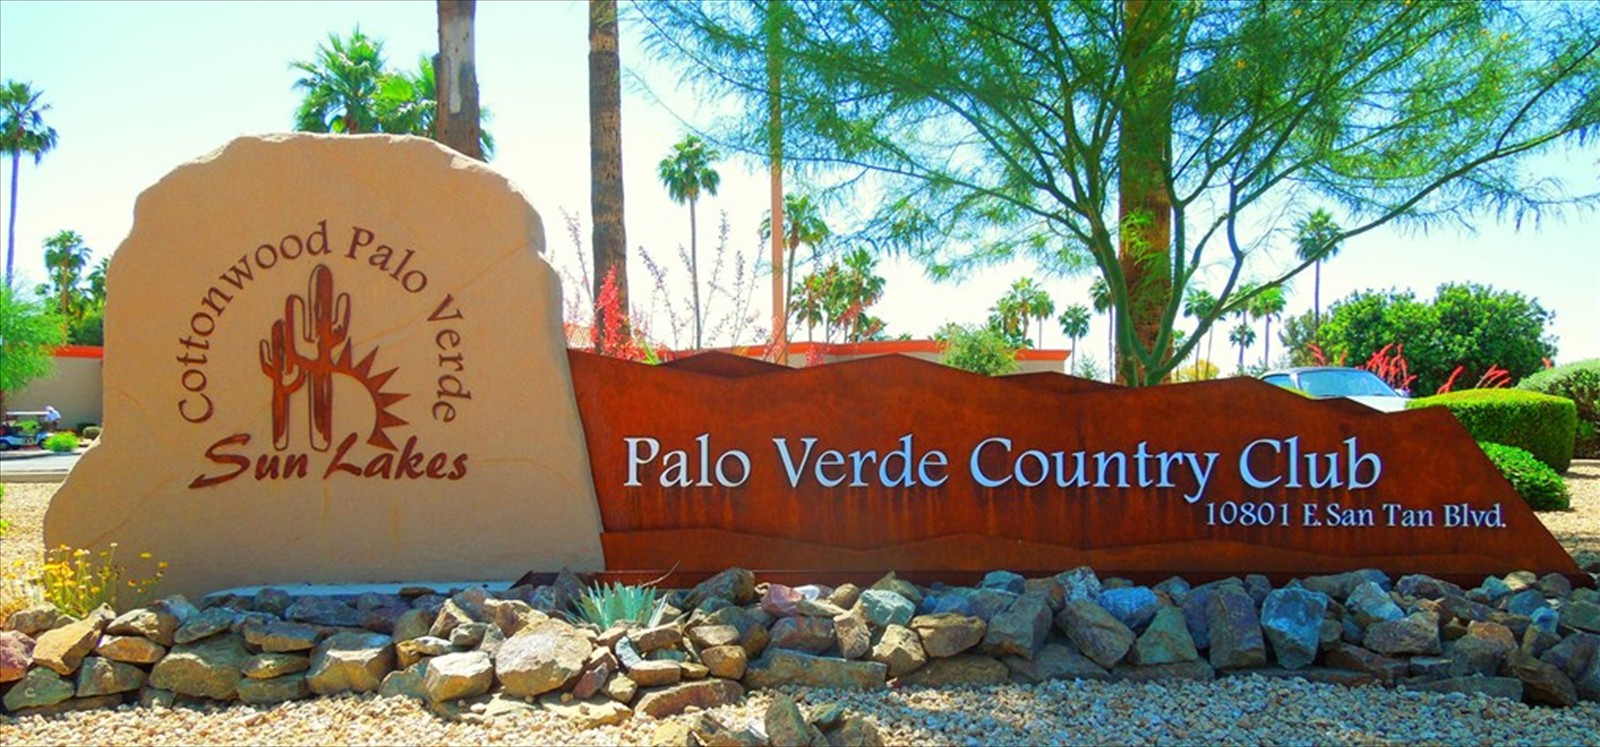 Palo Verde sign1Edited